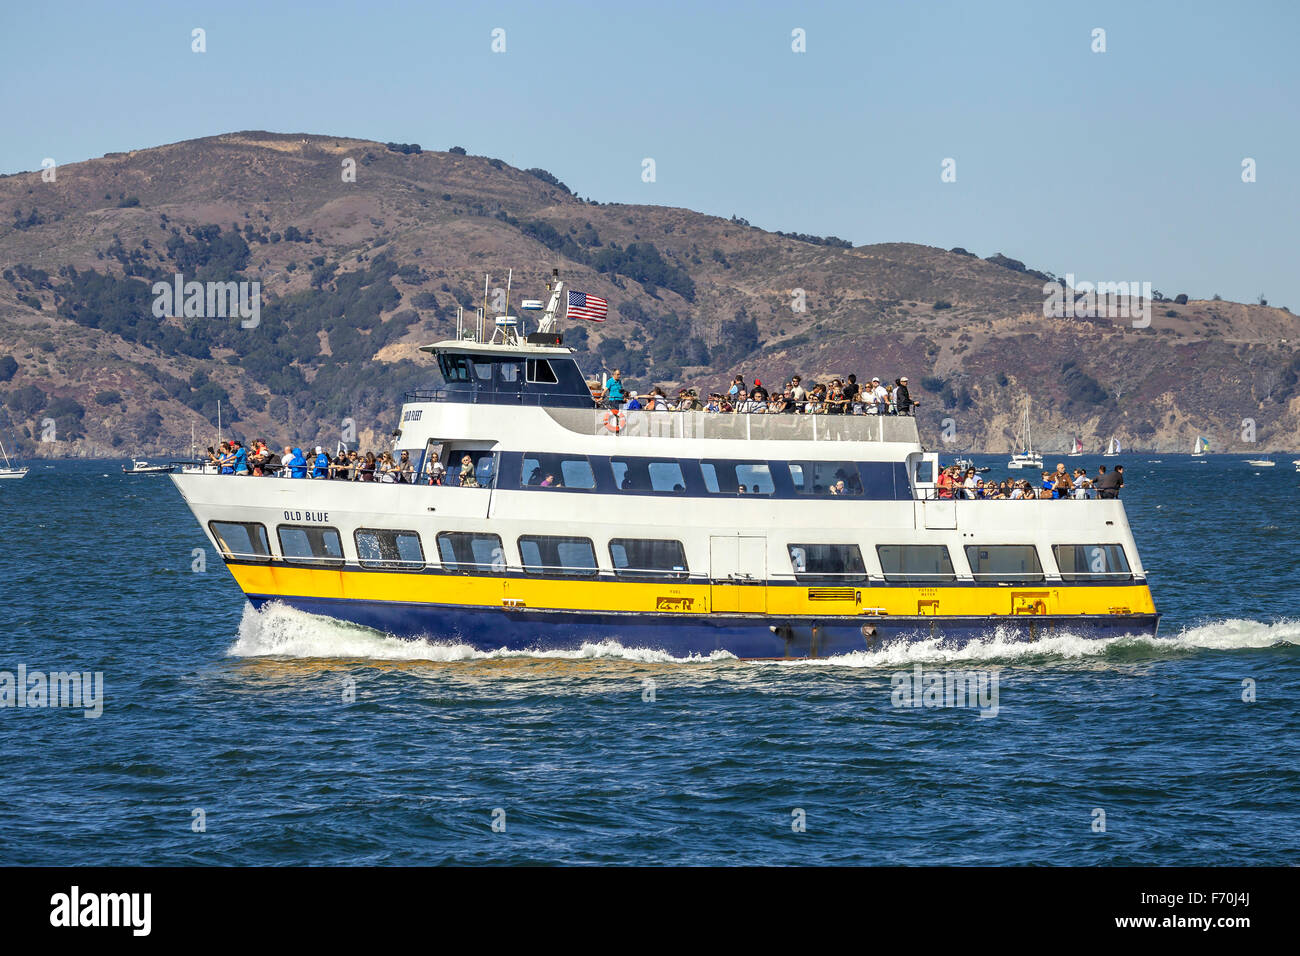 Le bleu et or ferry transportant des passagers de l'autre côté de la baie de San Francisco, San Francisco, California, USA Banque D'Images